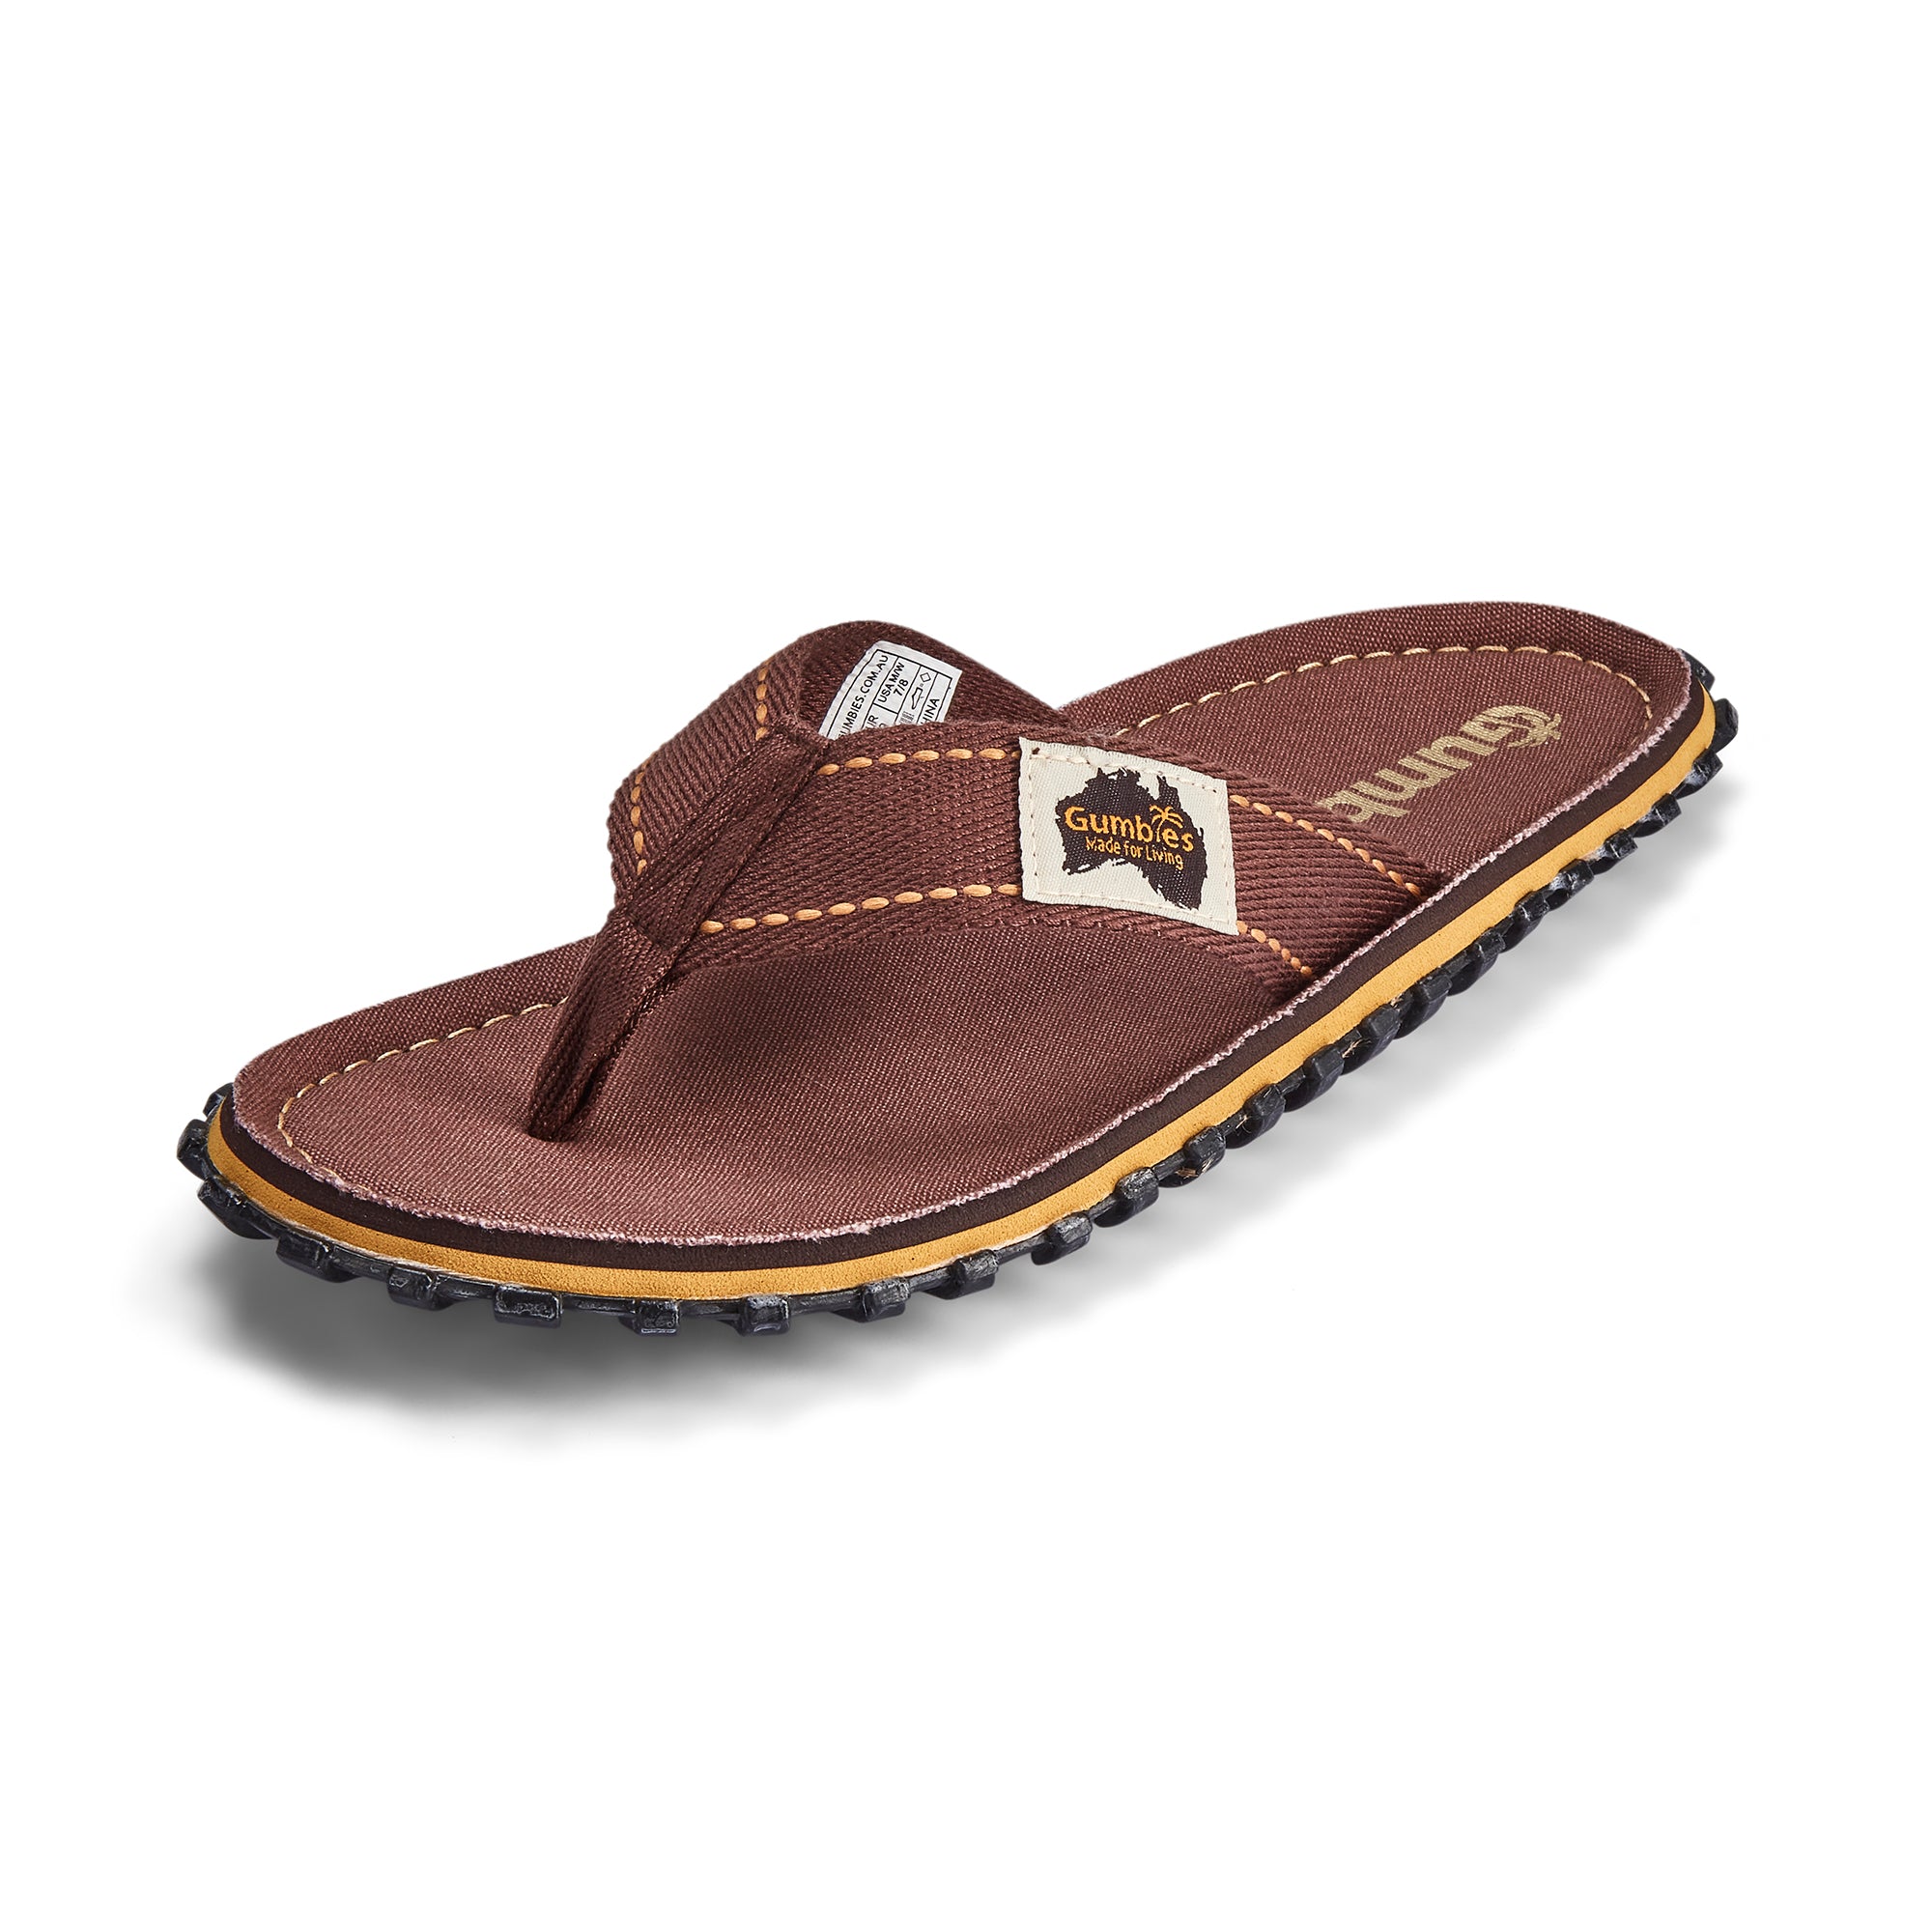 Islander Flip-Flops - Men's - Classic Brown